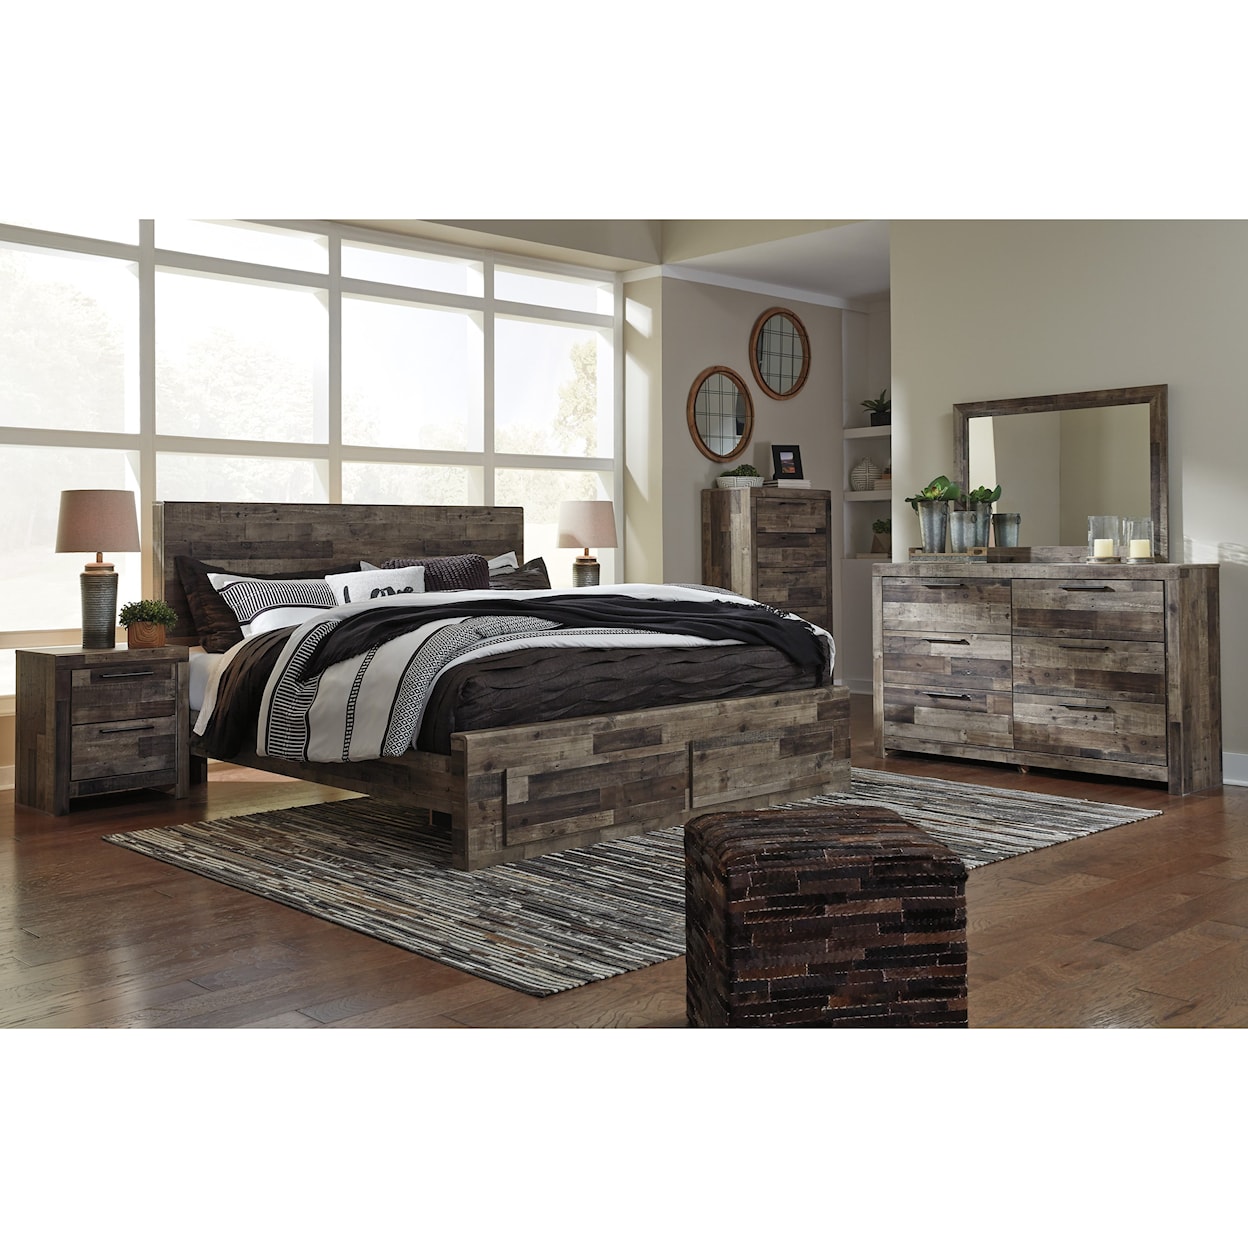 Ashley Furniture Benchcraft Derekson King Storage Bed